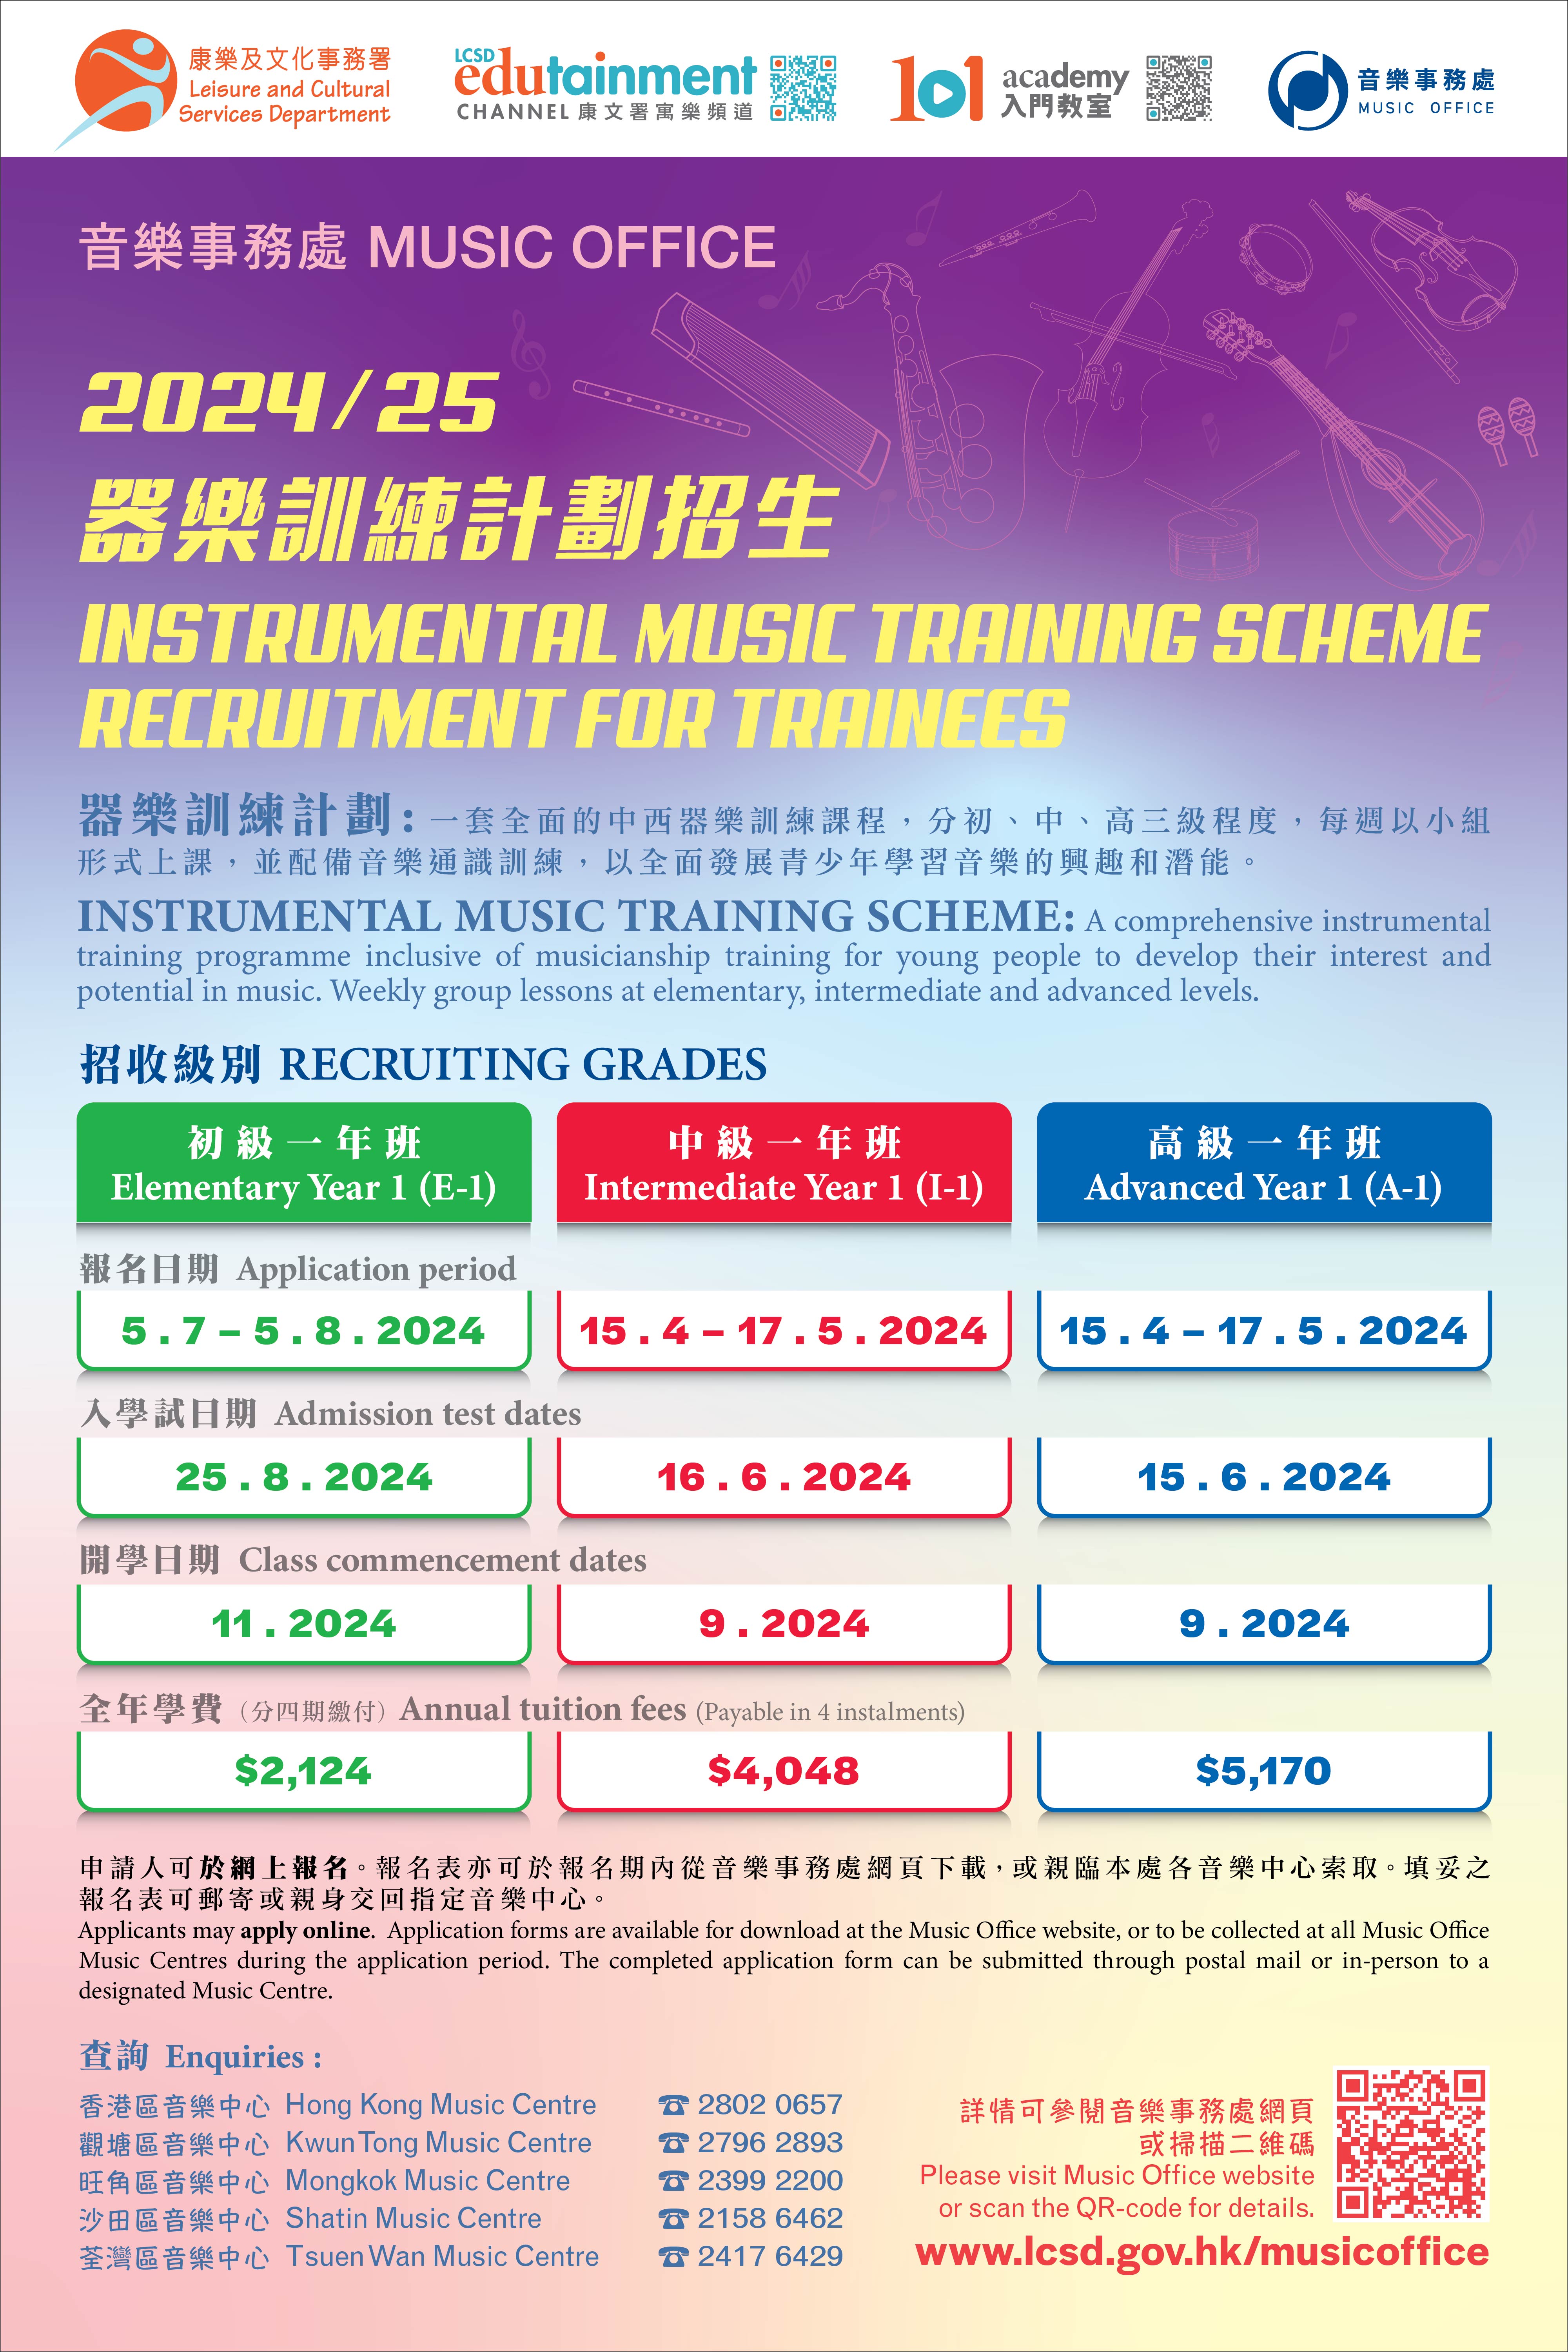 2024/25器乐训练计划中级一年班(I-1)及高级一年班(A-1)招生